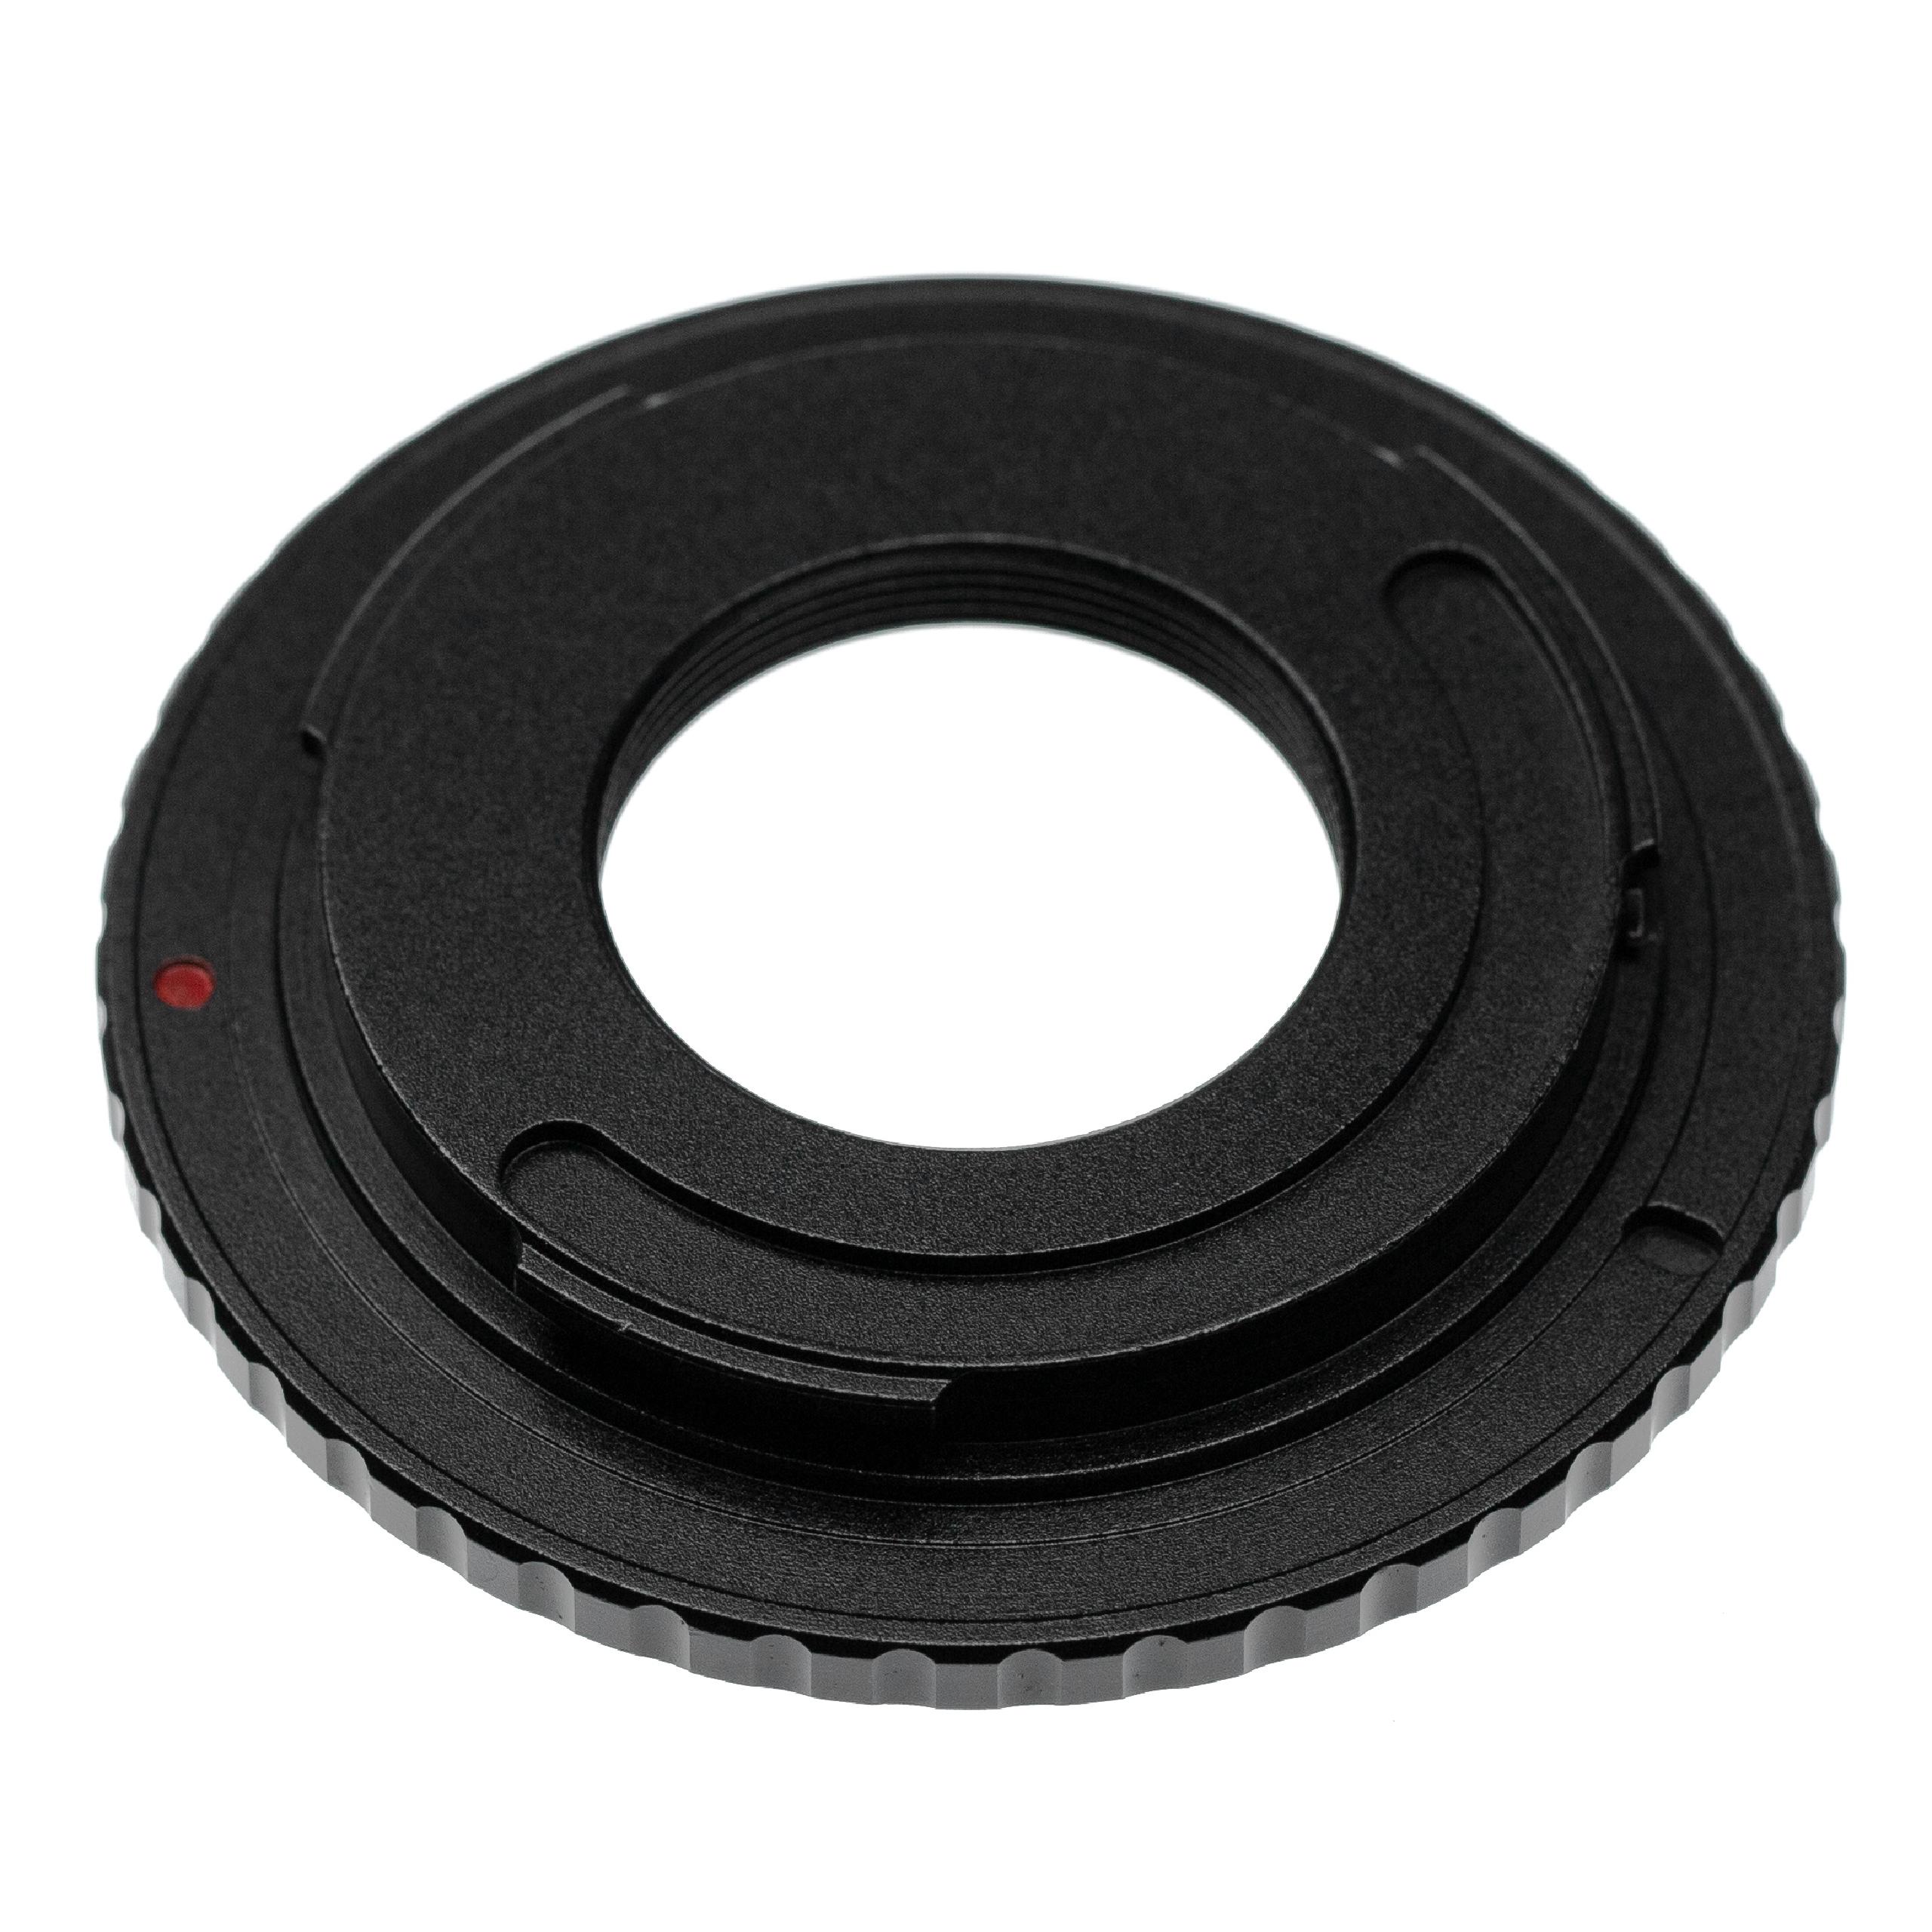 Pierścień pośredni do aparatu Sony NEX E na obiektyw z gwintem M42